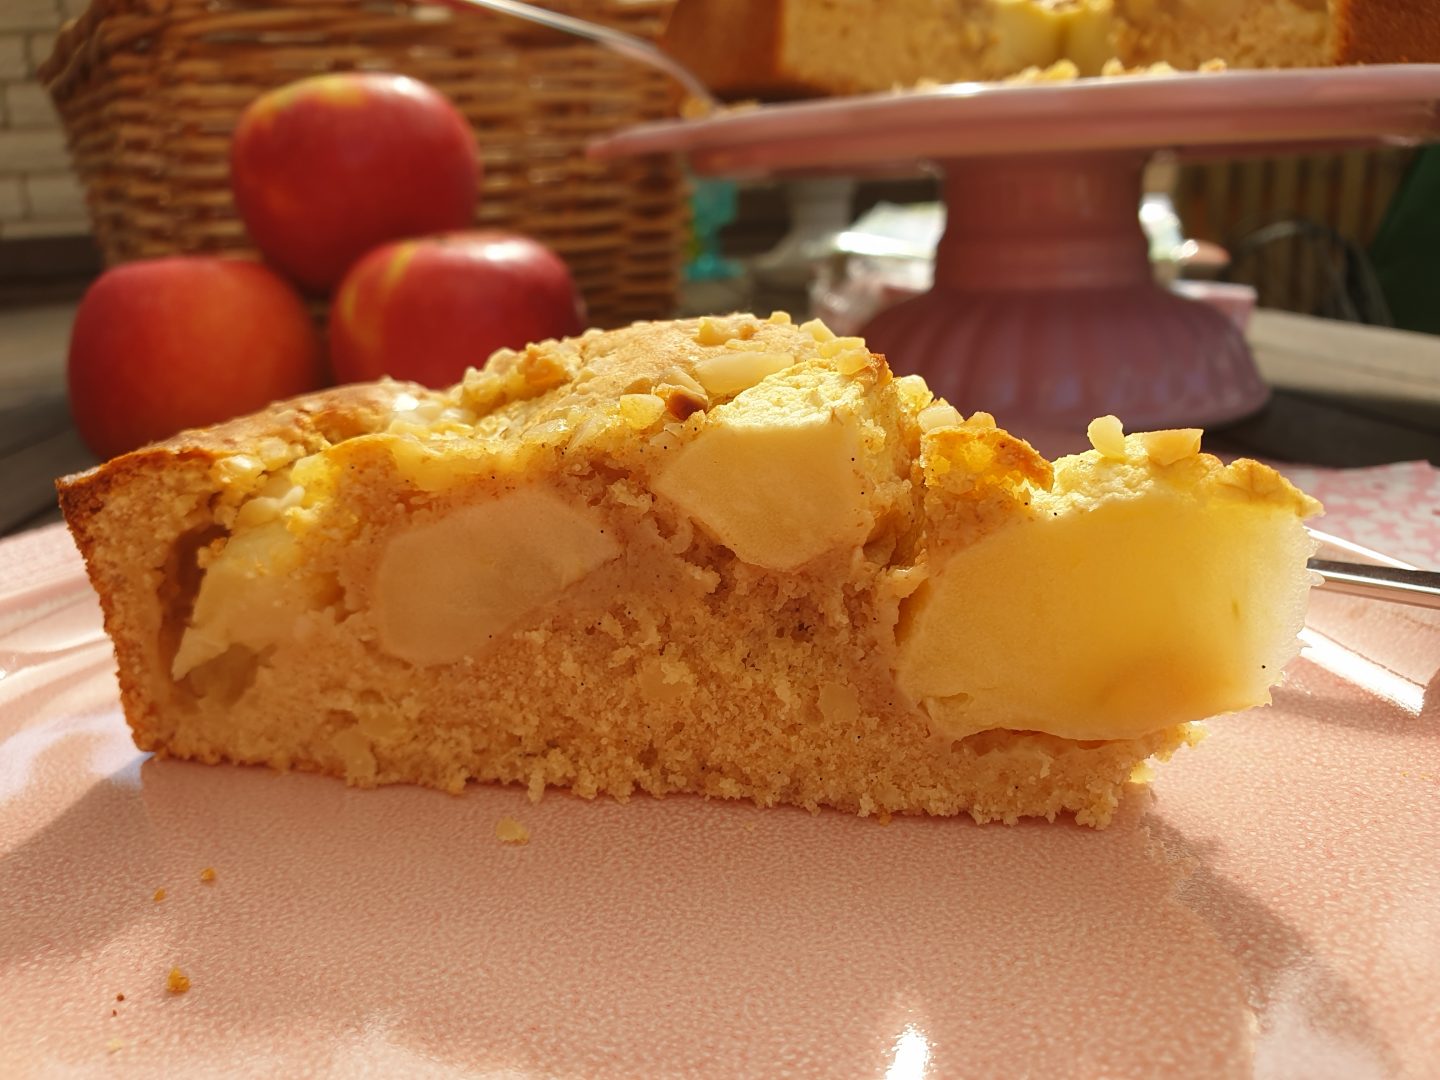 Mein Rezept für einen saftigen und süßen Apfelkuchen ohne Zucker findest Du hier. auf meinem Blog unter dem Suchbegriff APFEL. 